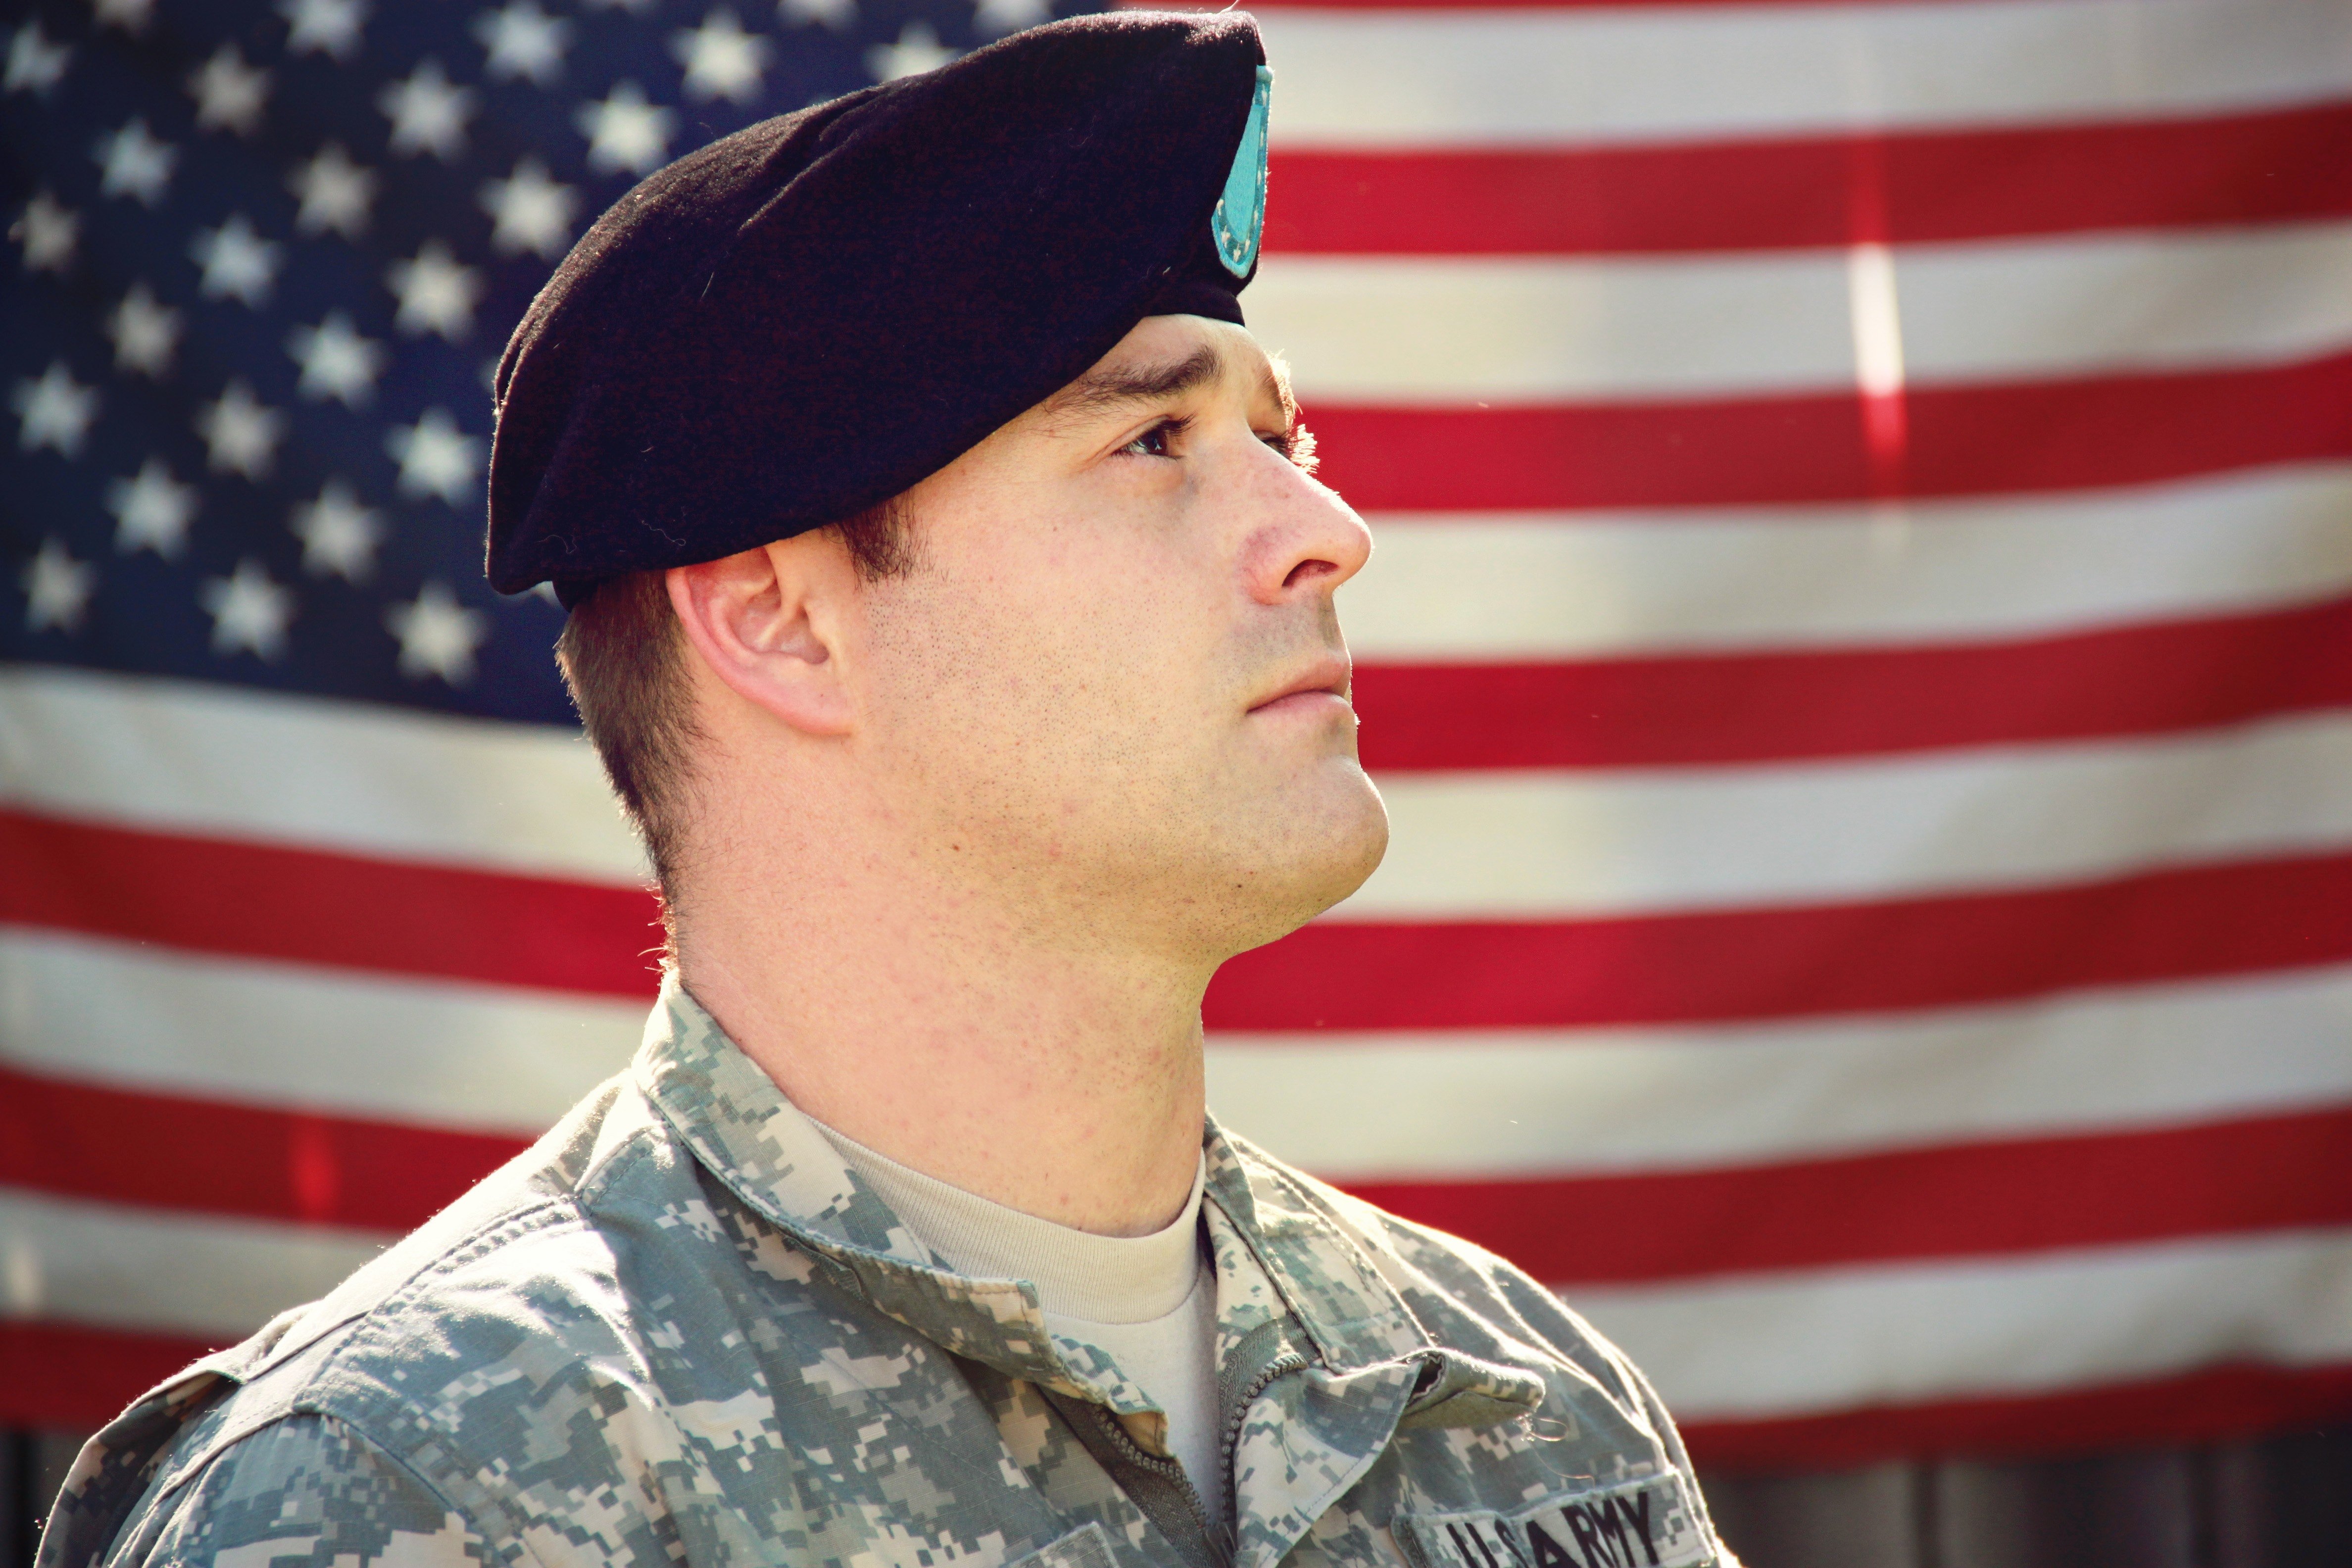 Christopher verließ sein Zuhause, um in der Armee zu dienen. | Quelle: Pexels